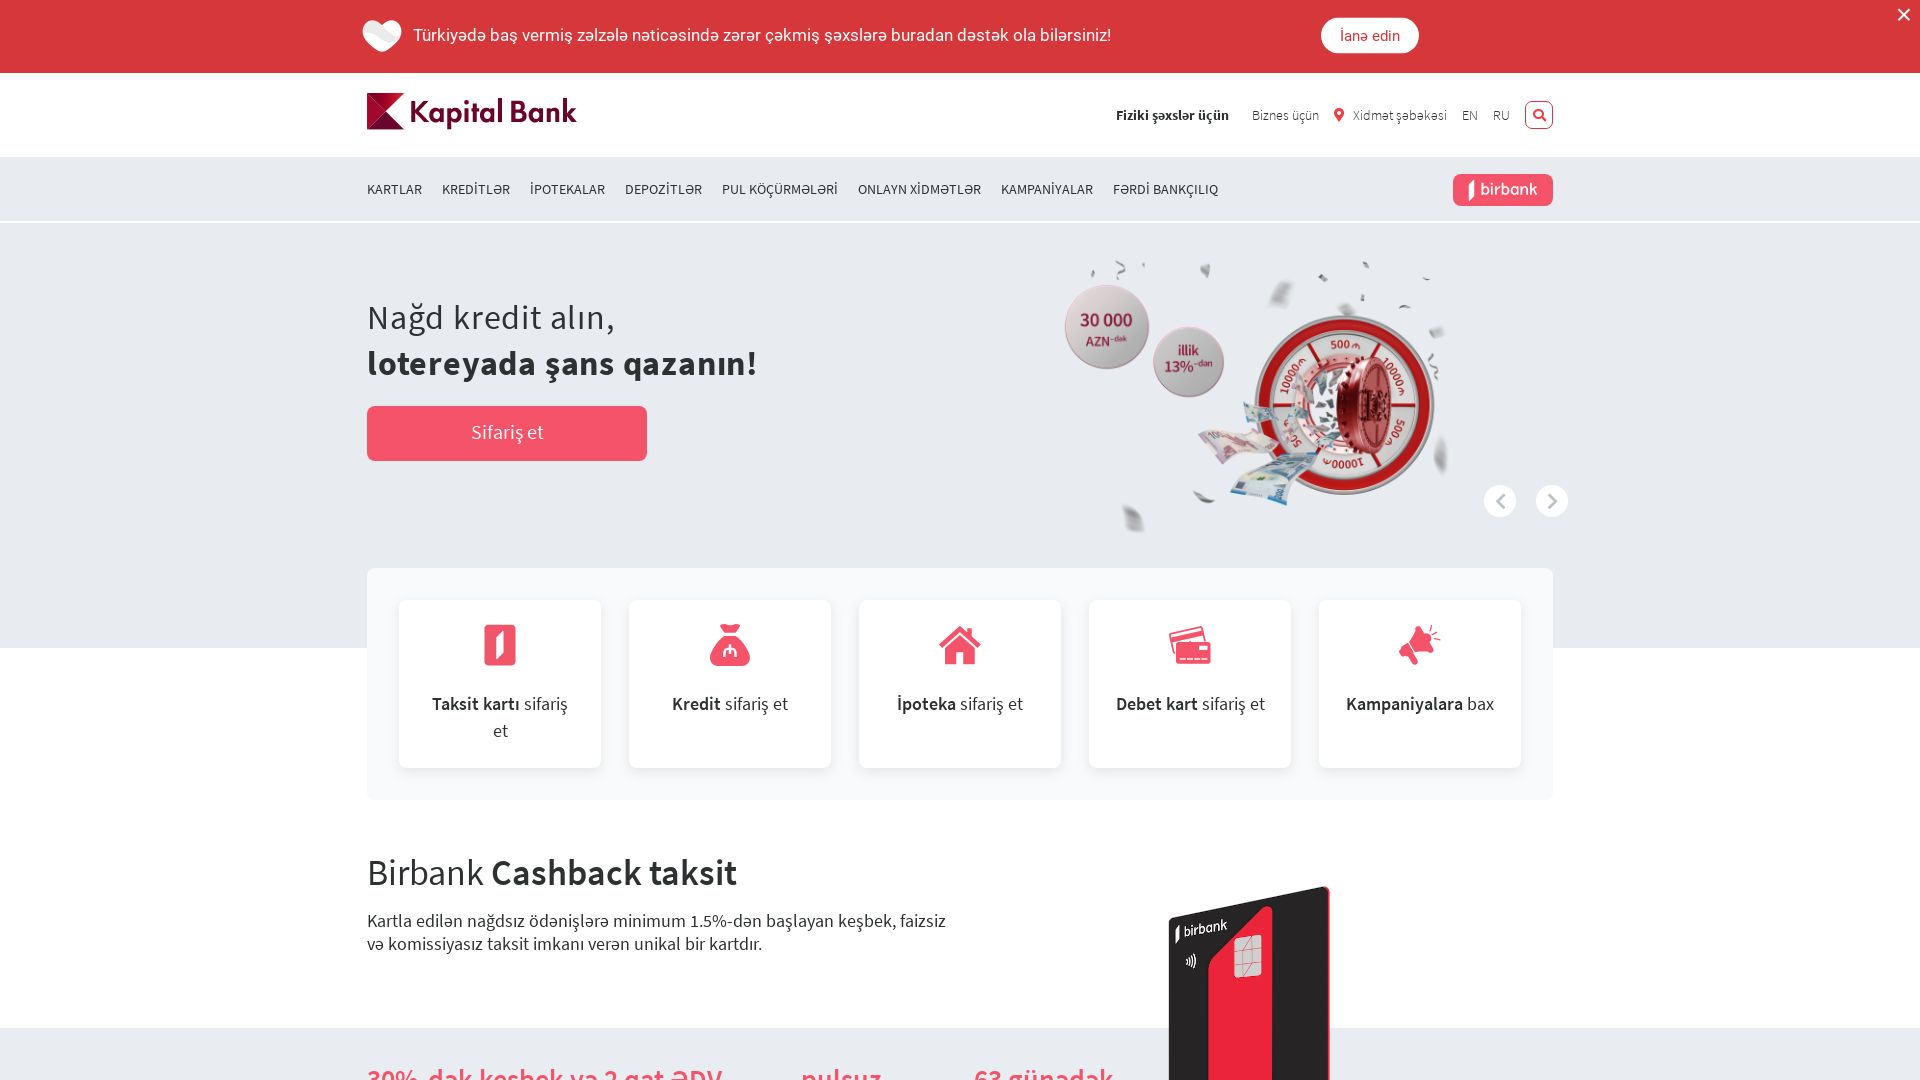 État du site web kapitalbank.az est   EN LIGNE